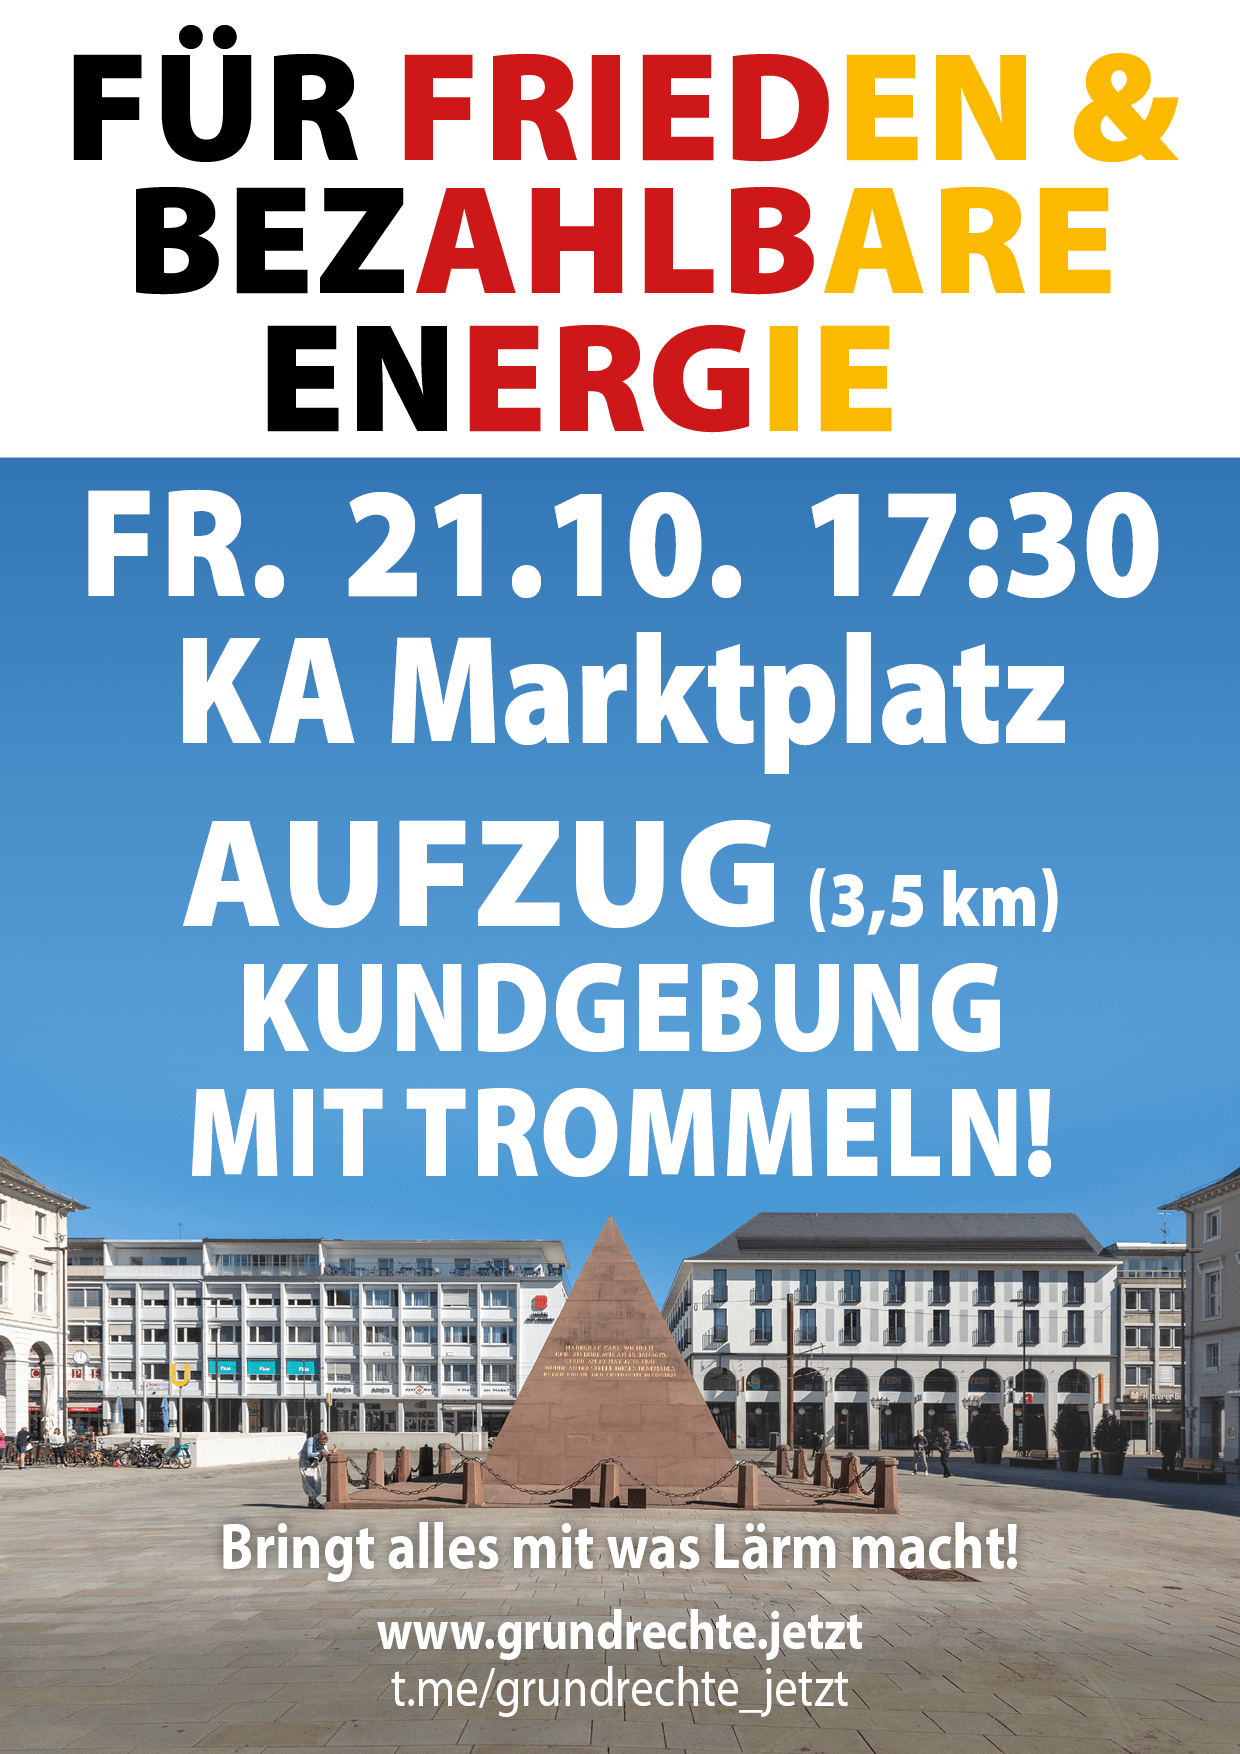 Für Frieden & bezahlbare Energie - Kundgebung mit Aufzug - Karlsruhe Marktplatz 21.10.2022 17:30 Uhr